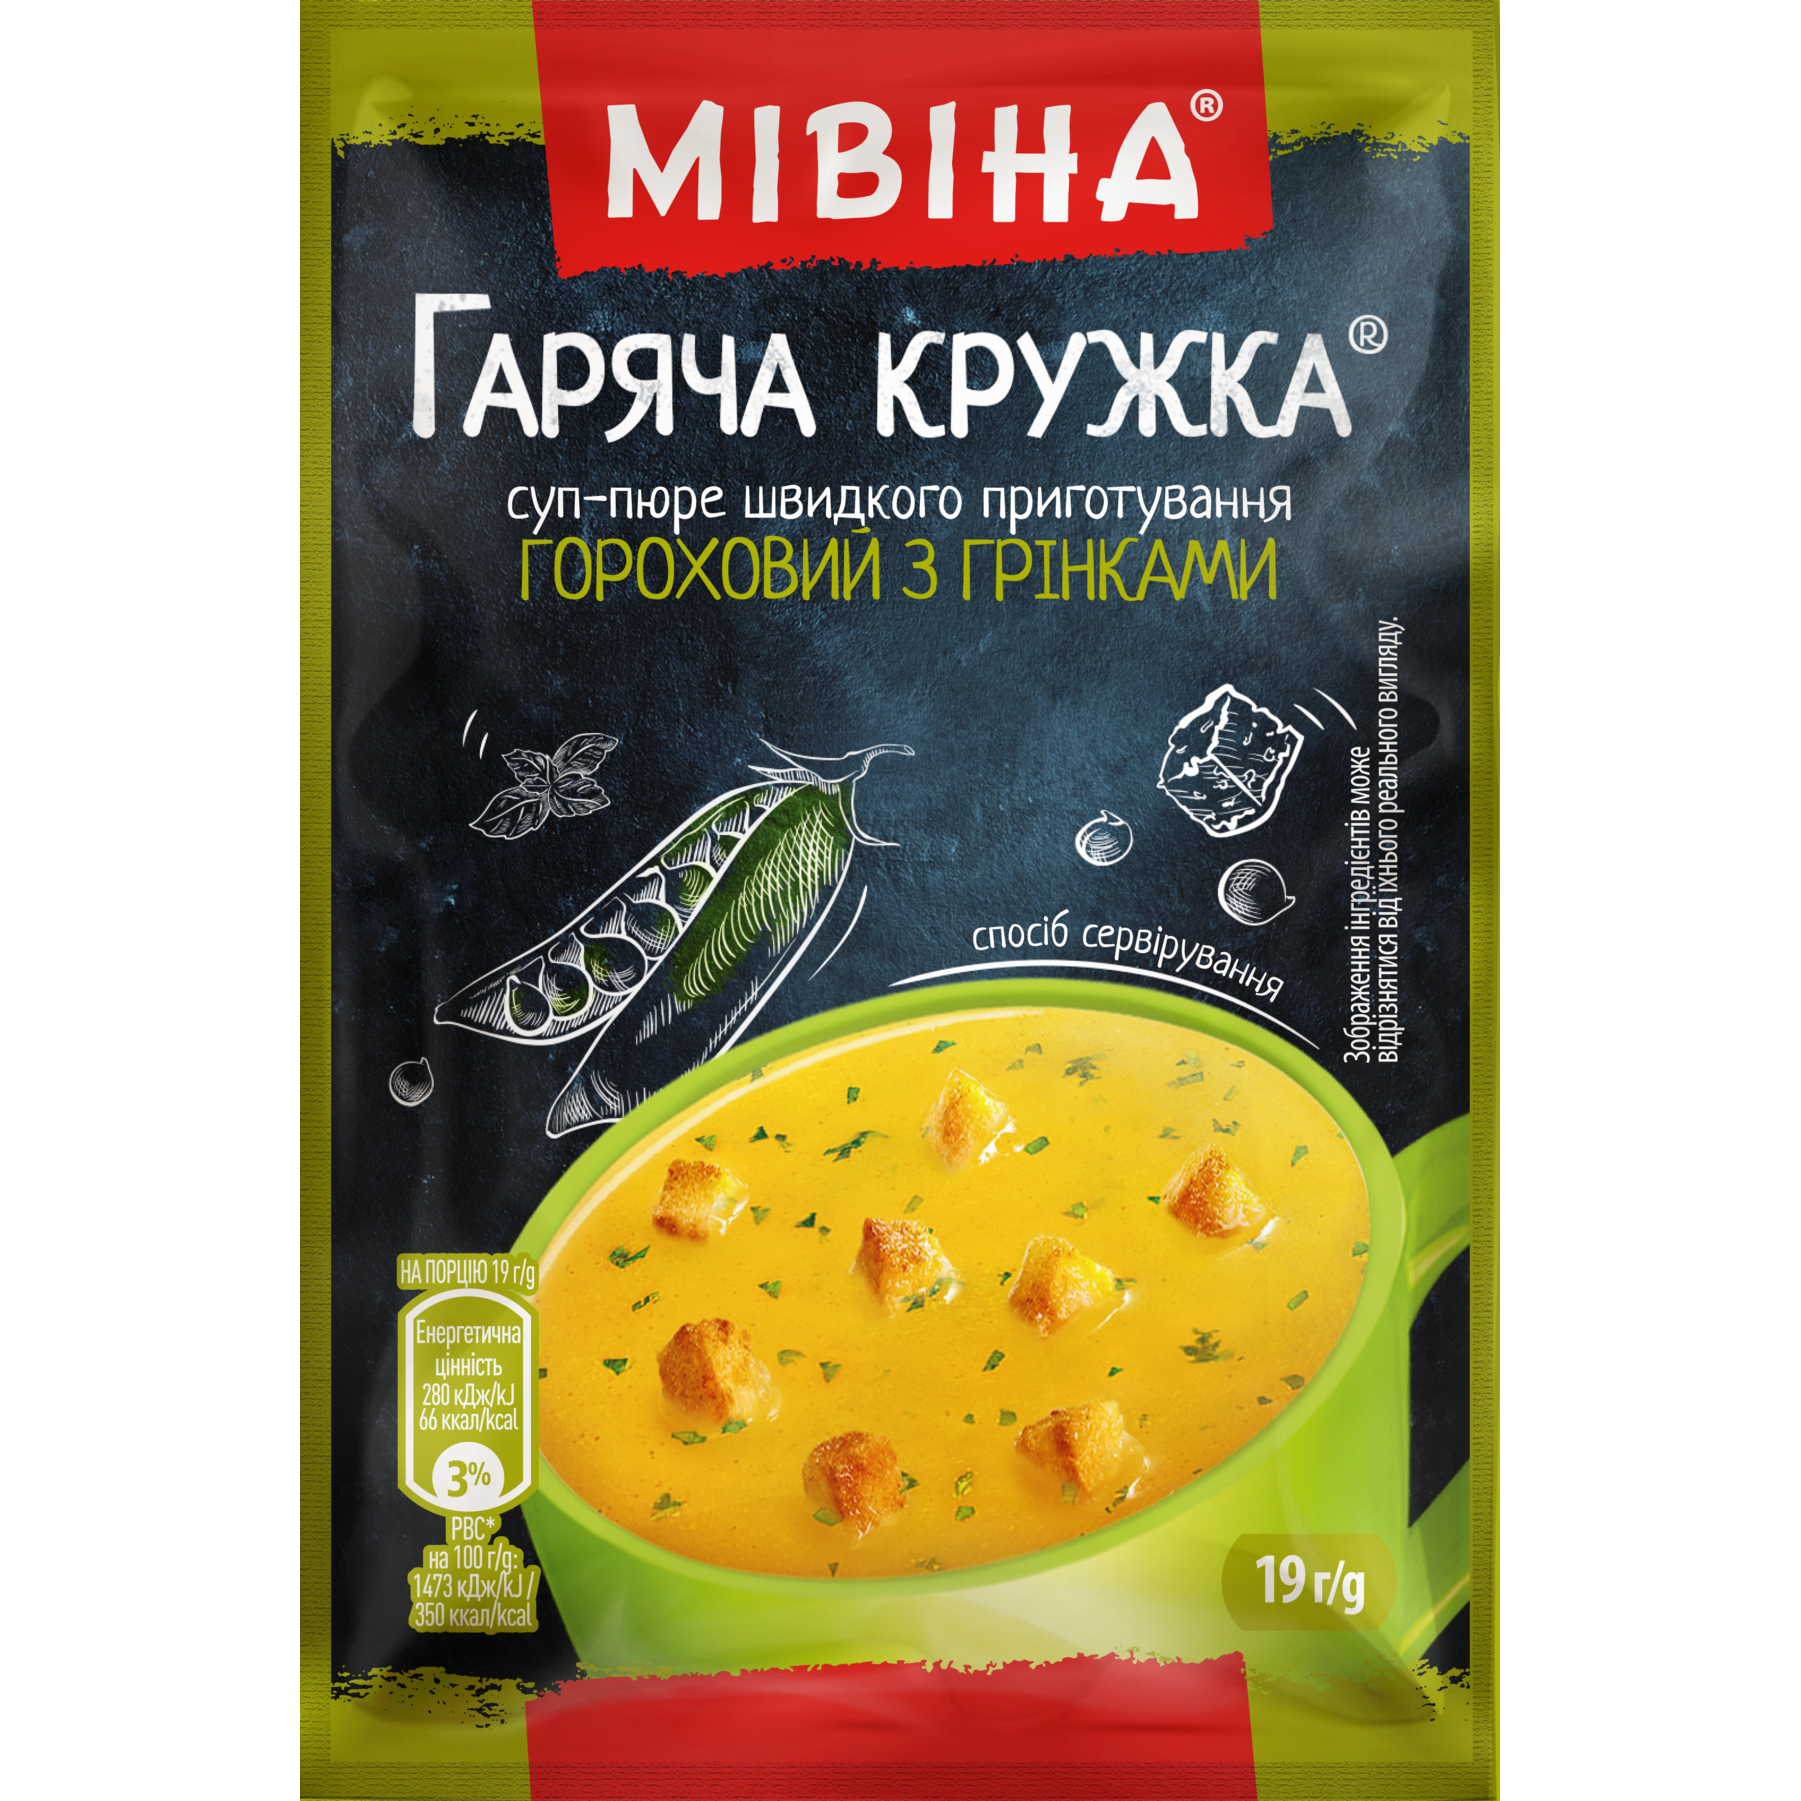 Суп-пюре швидкого приготування Мівіна Гаряча кружка, гороховий з грінками 19 г (547301) - фото 1